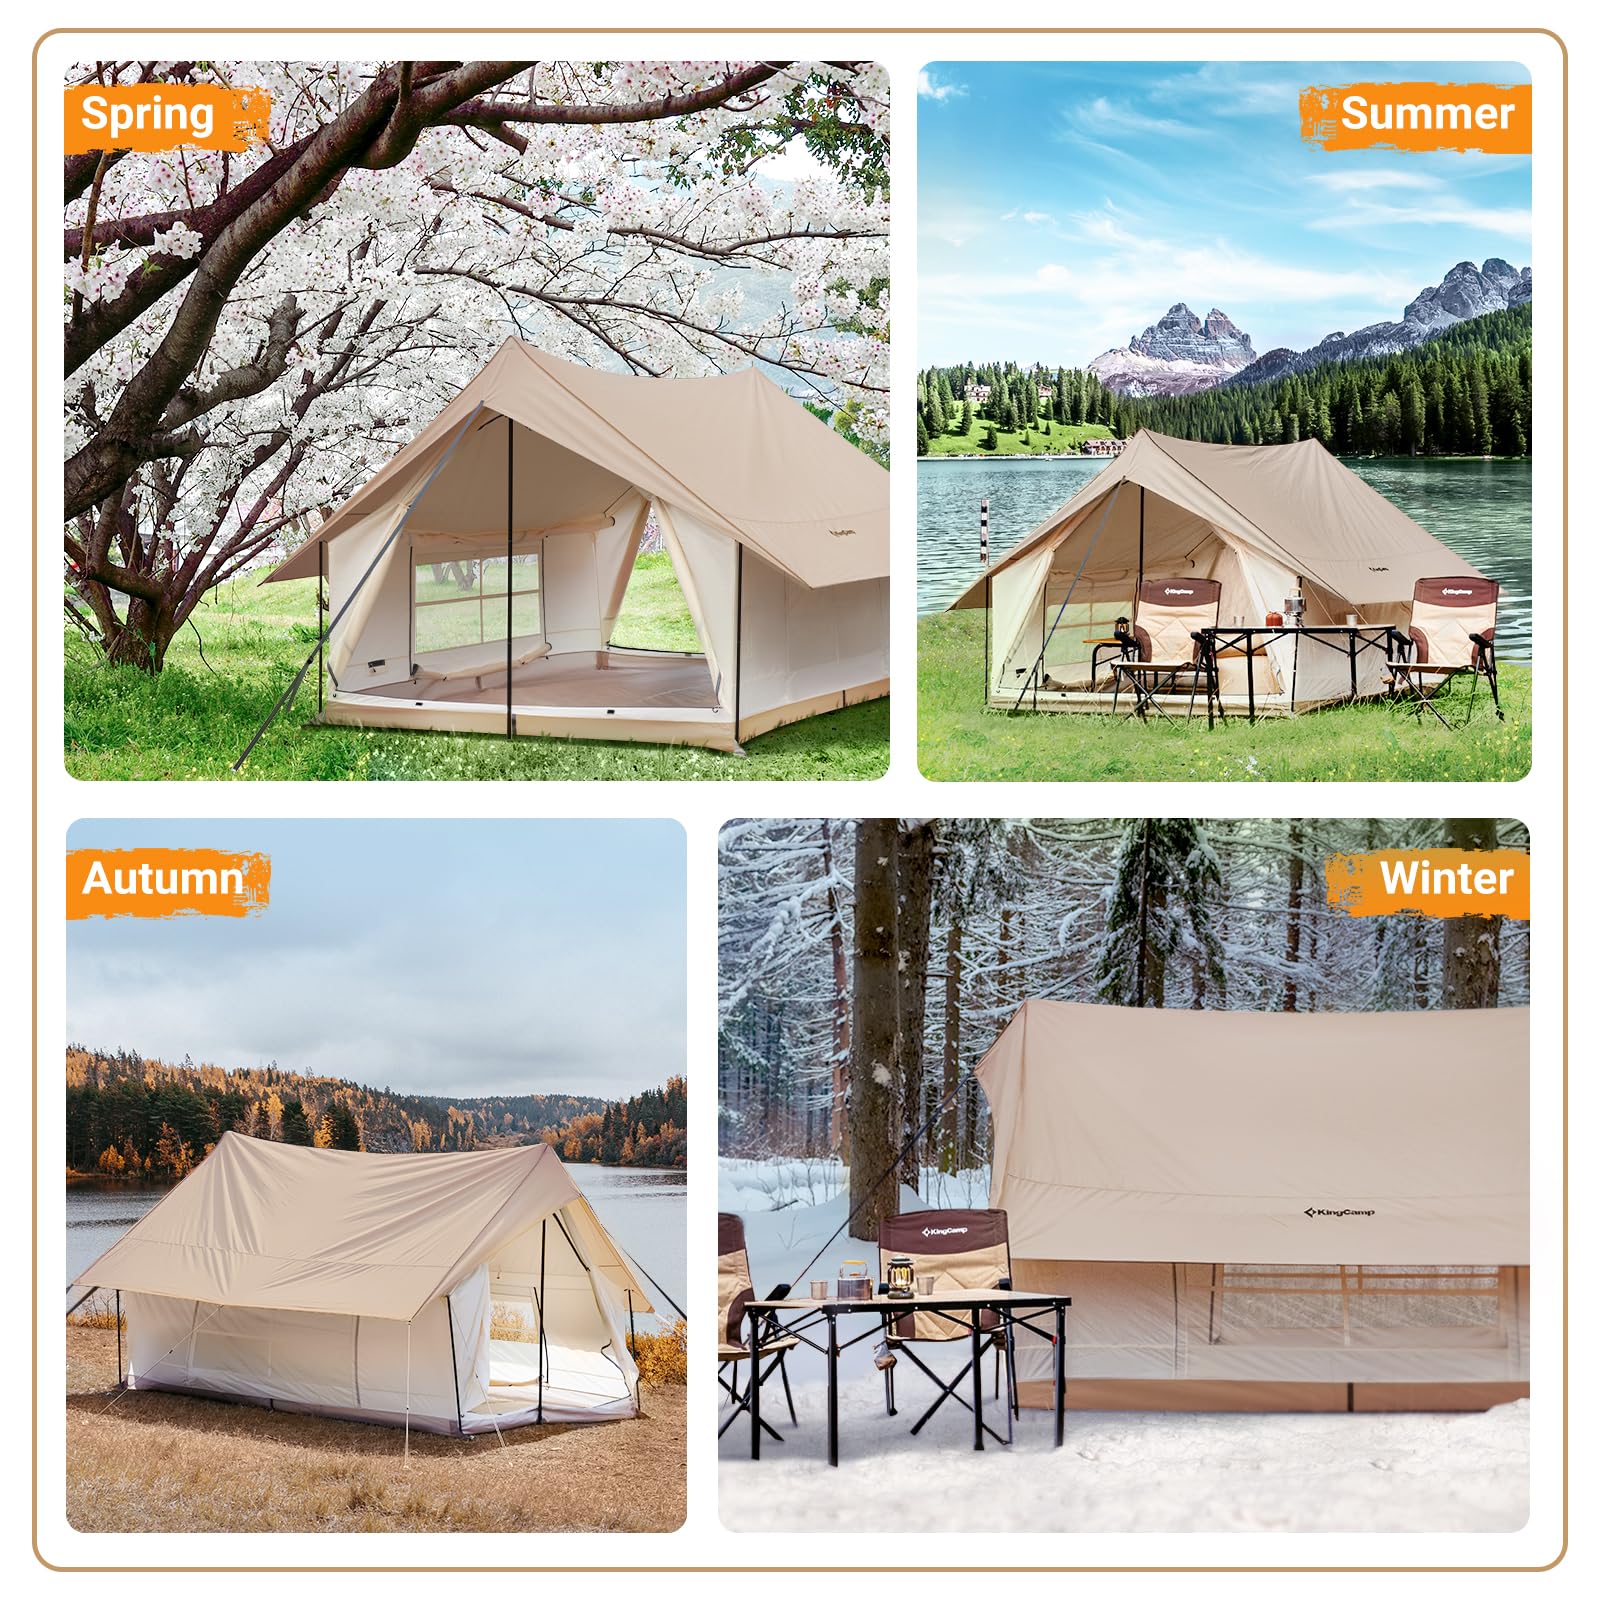 KingCamp tents